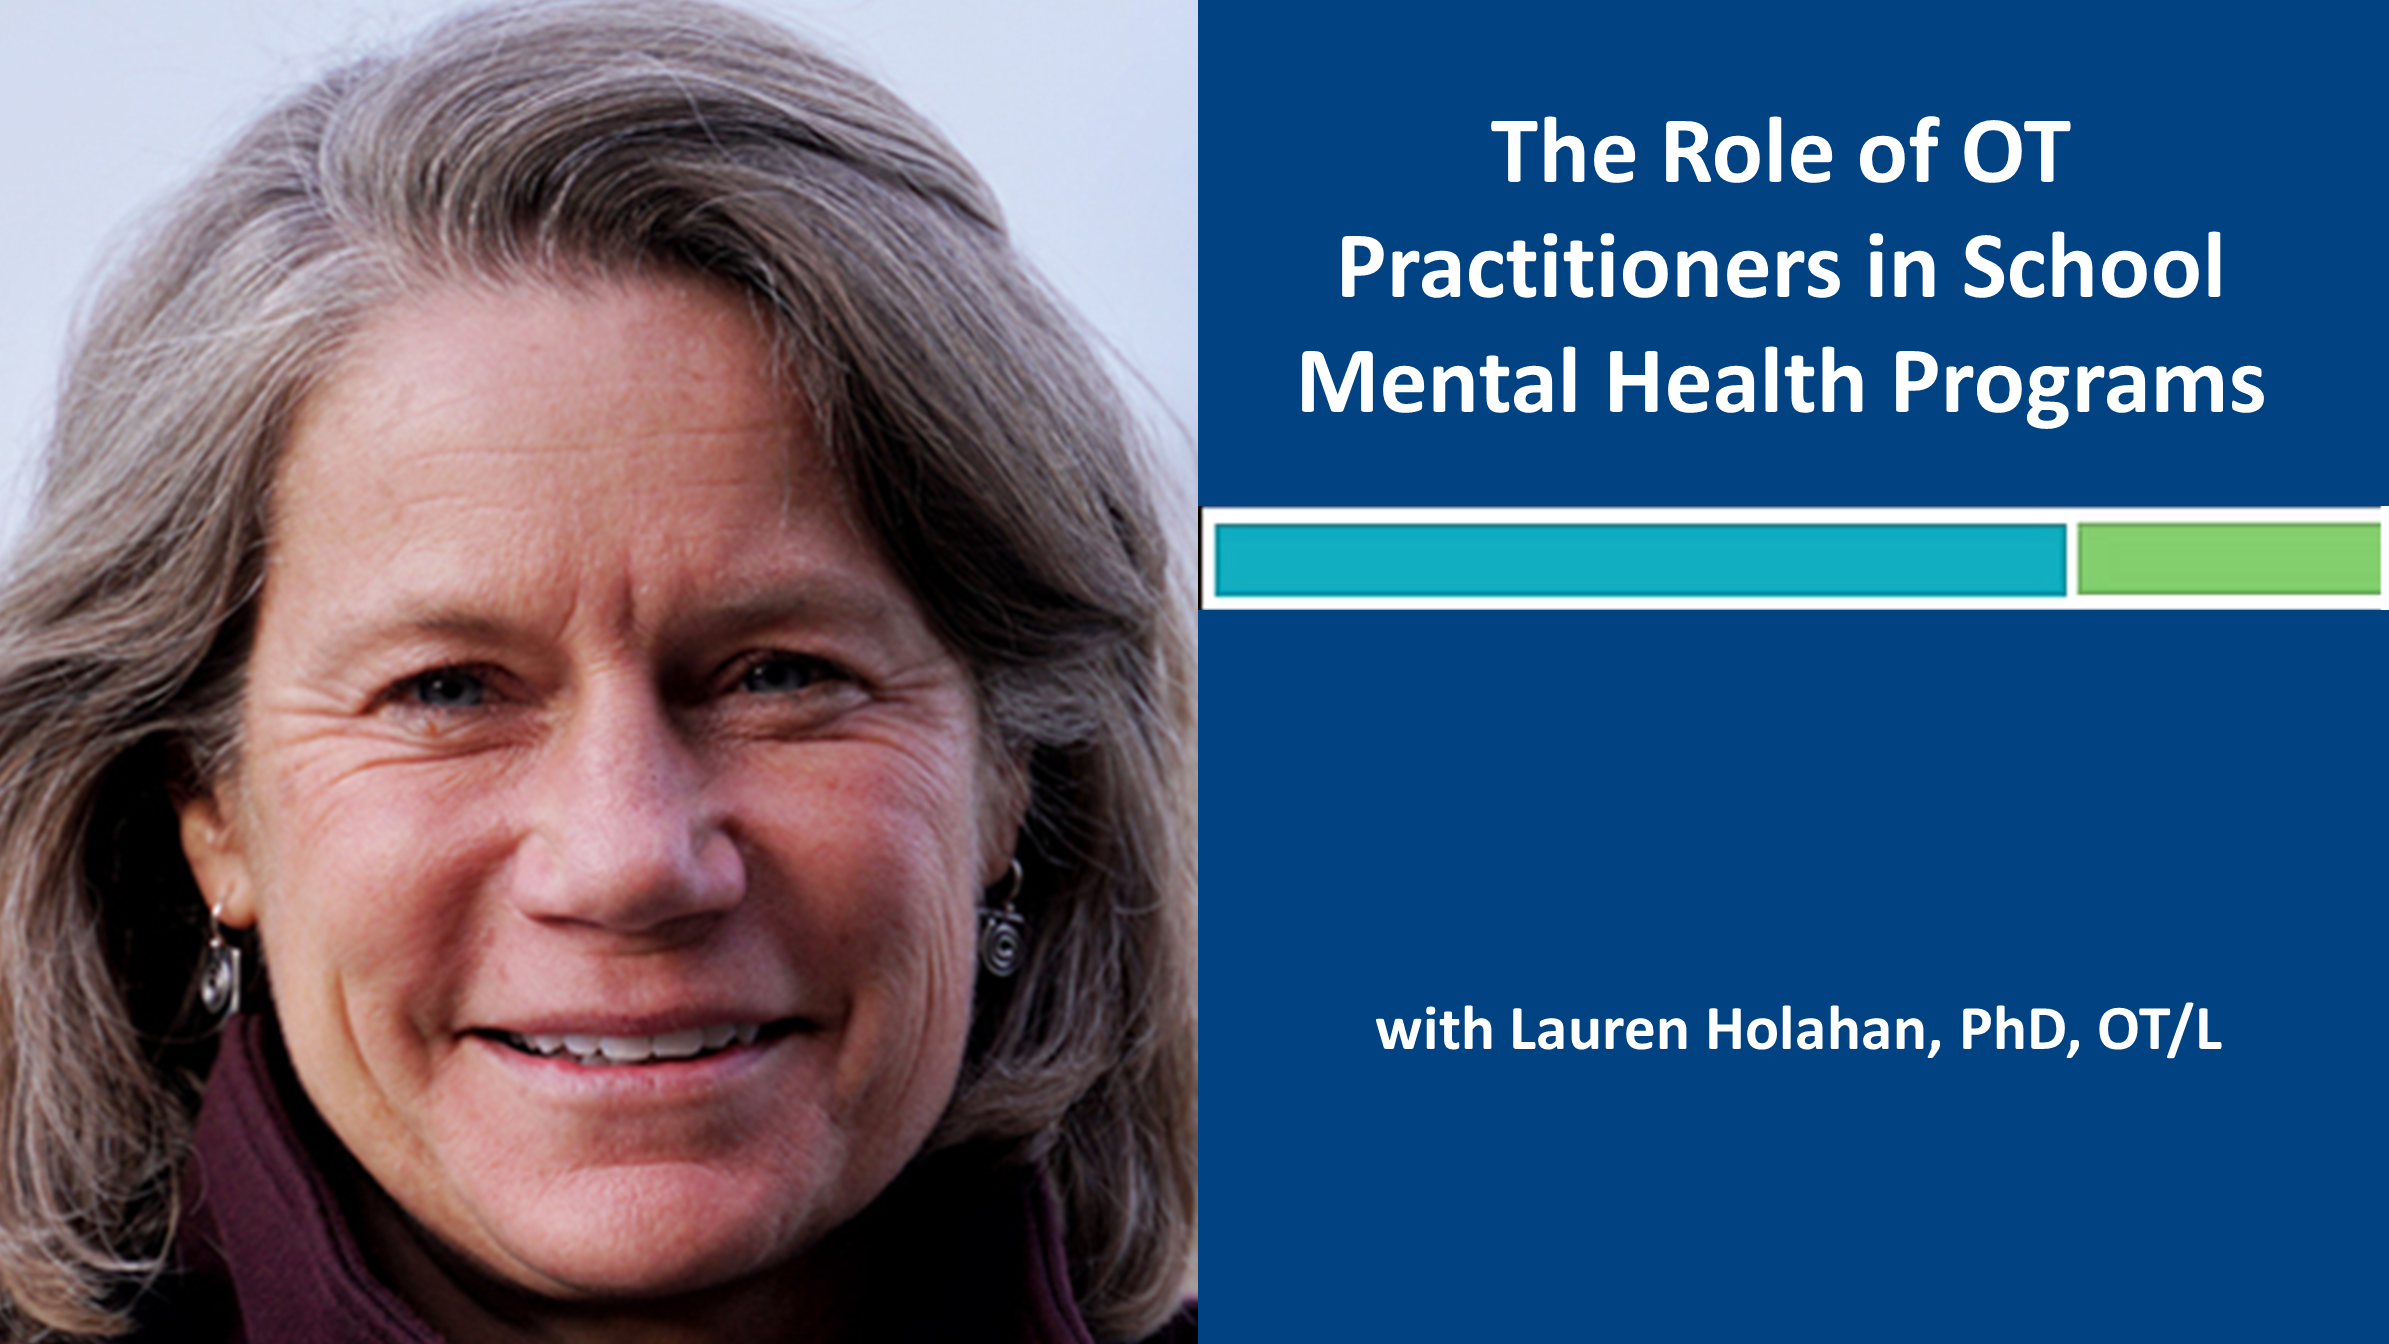 Webinar 6: The Role of OT in School Mental Health Programs with Lauren Holahan, PhD, OT/L